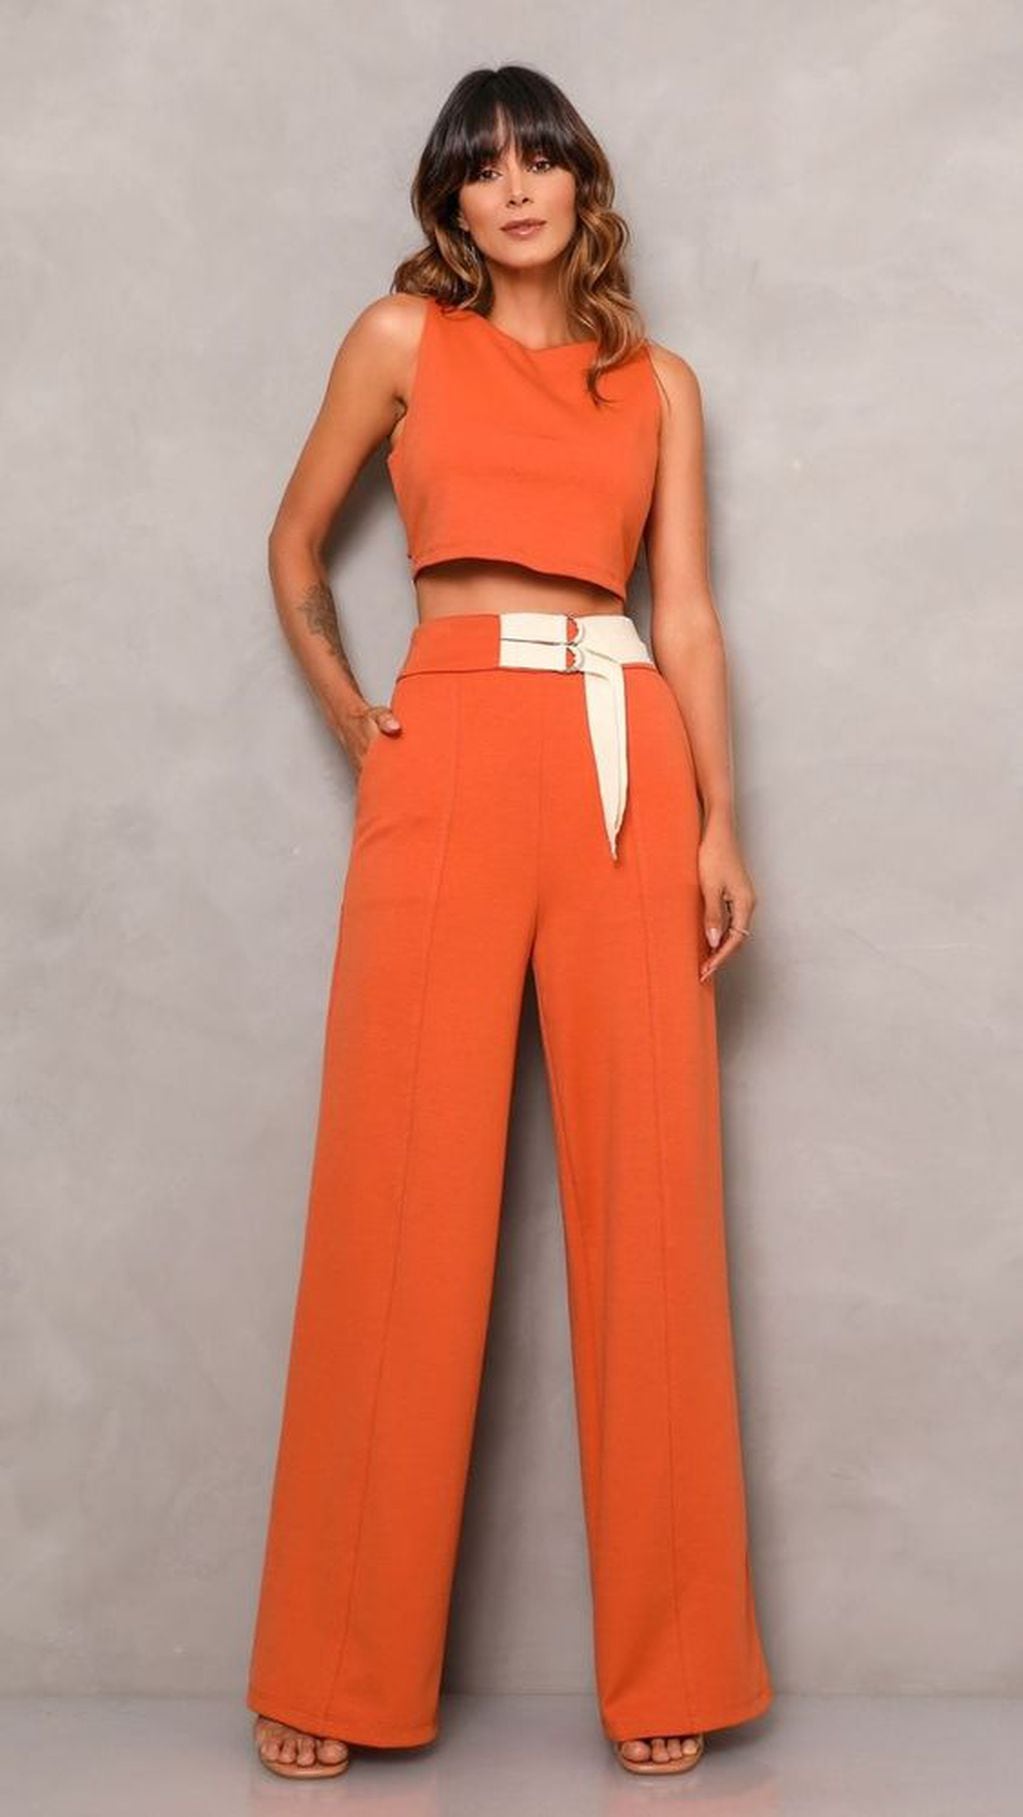 Como combinar un pantalon naranja? Mas de 25 ideas 